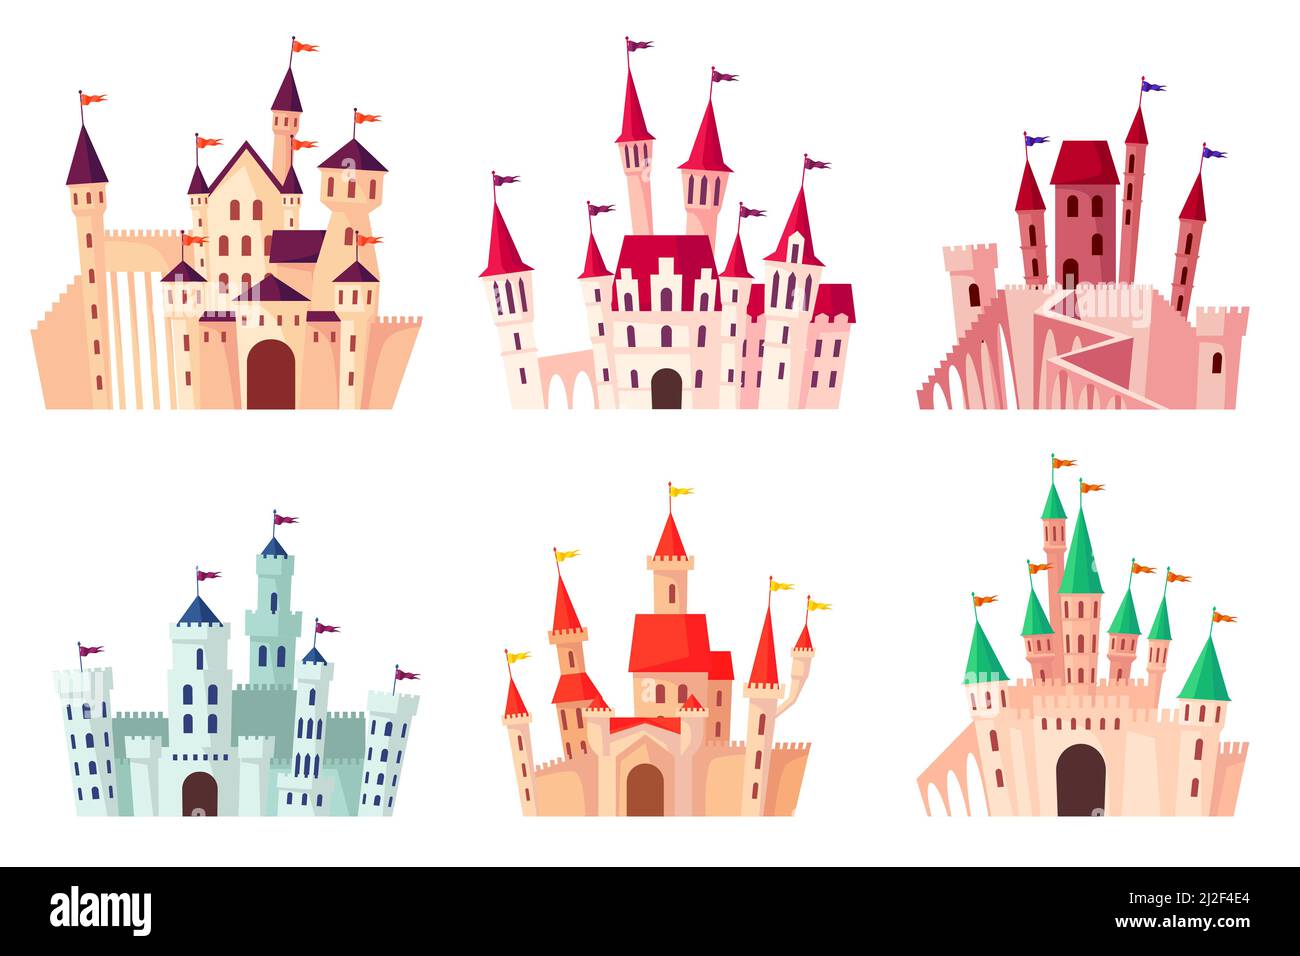 Cartoon castelli medievali illustrazione insieme vettoriale. Collezione di torri gotiche, palazzi fortificati, palazzi isolati su sfondo bianco. Fiaba, An Illustrazione Vettoriale